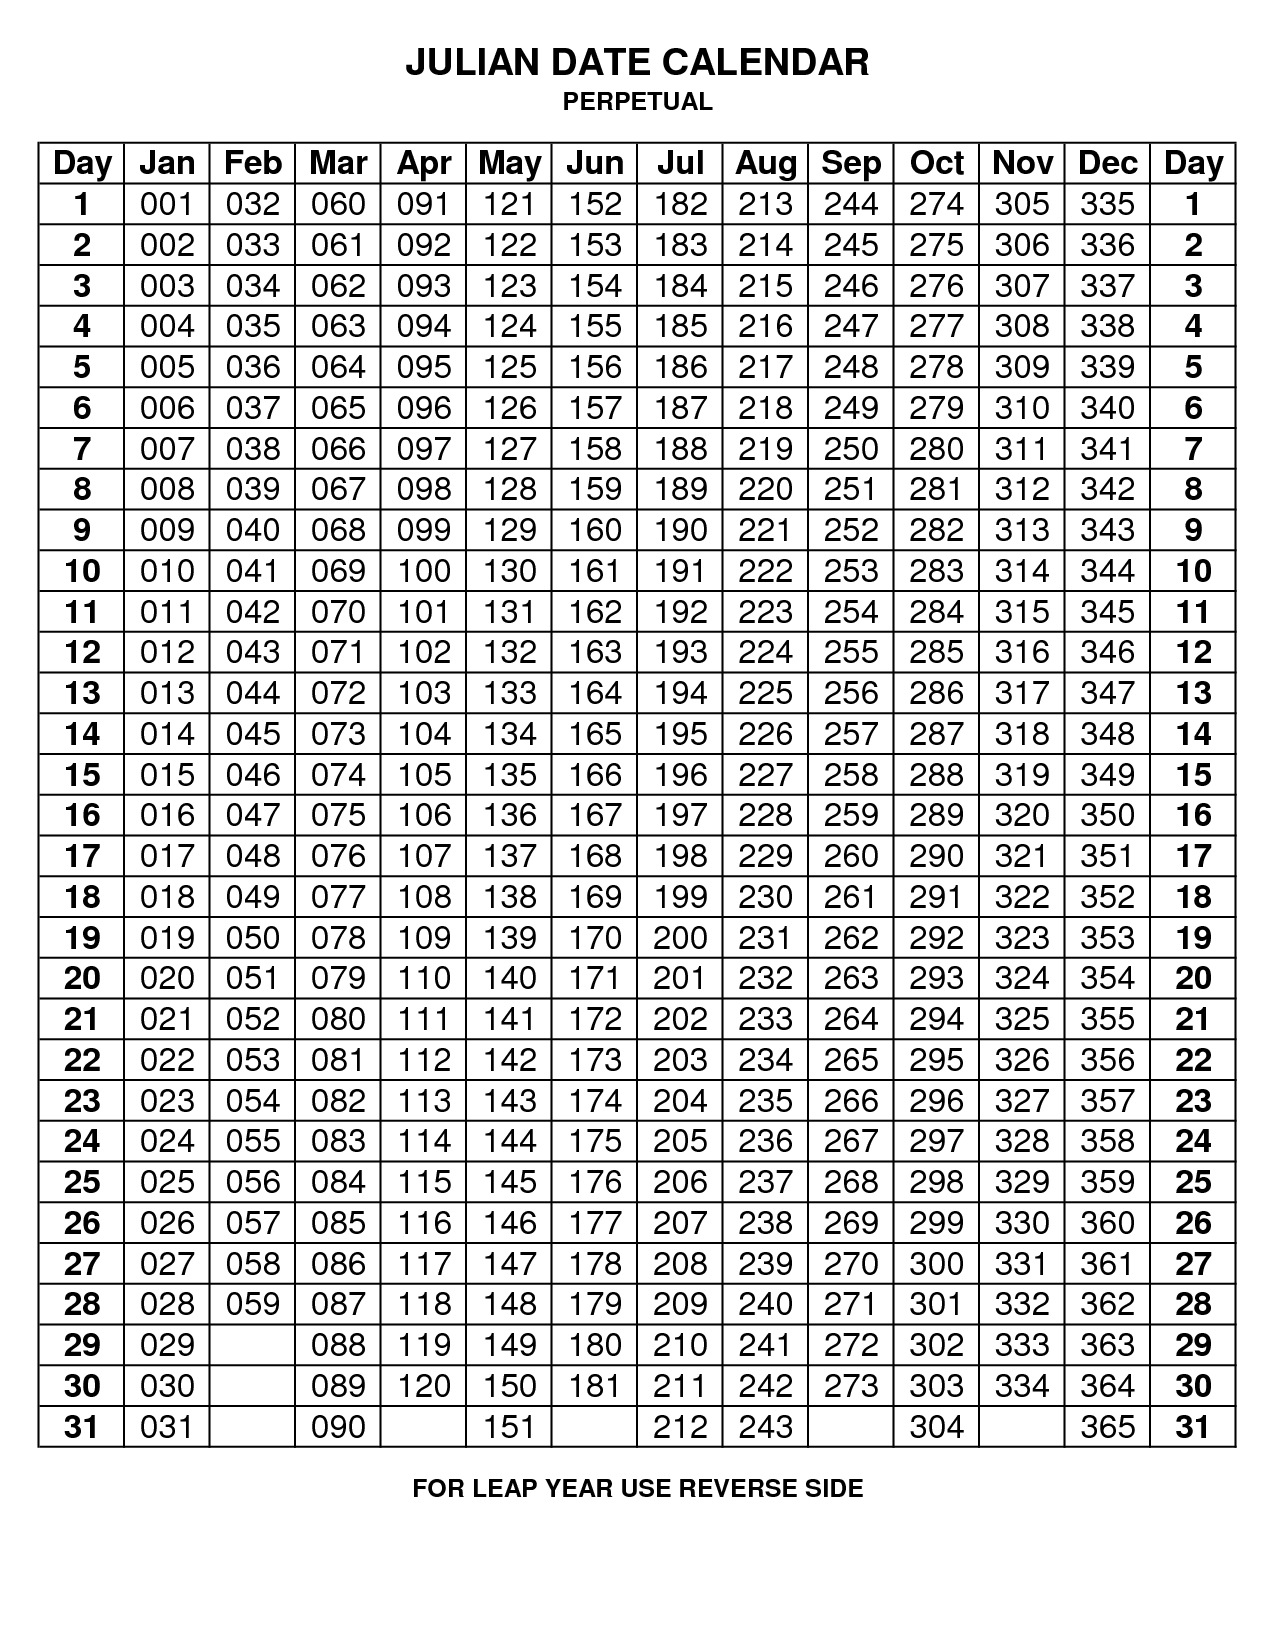 Julian Code - Non-Leap Year | Printable Calendar Template inside Perpetual Julian Calendar 2019 Printable Free